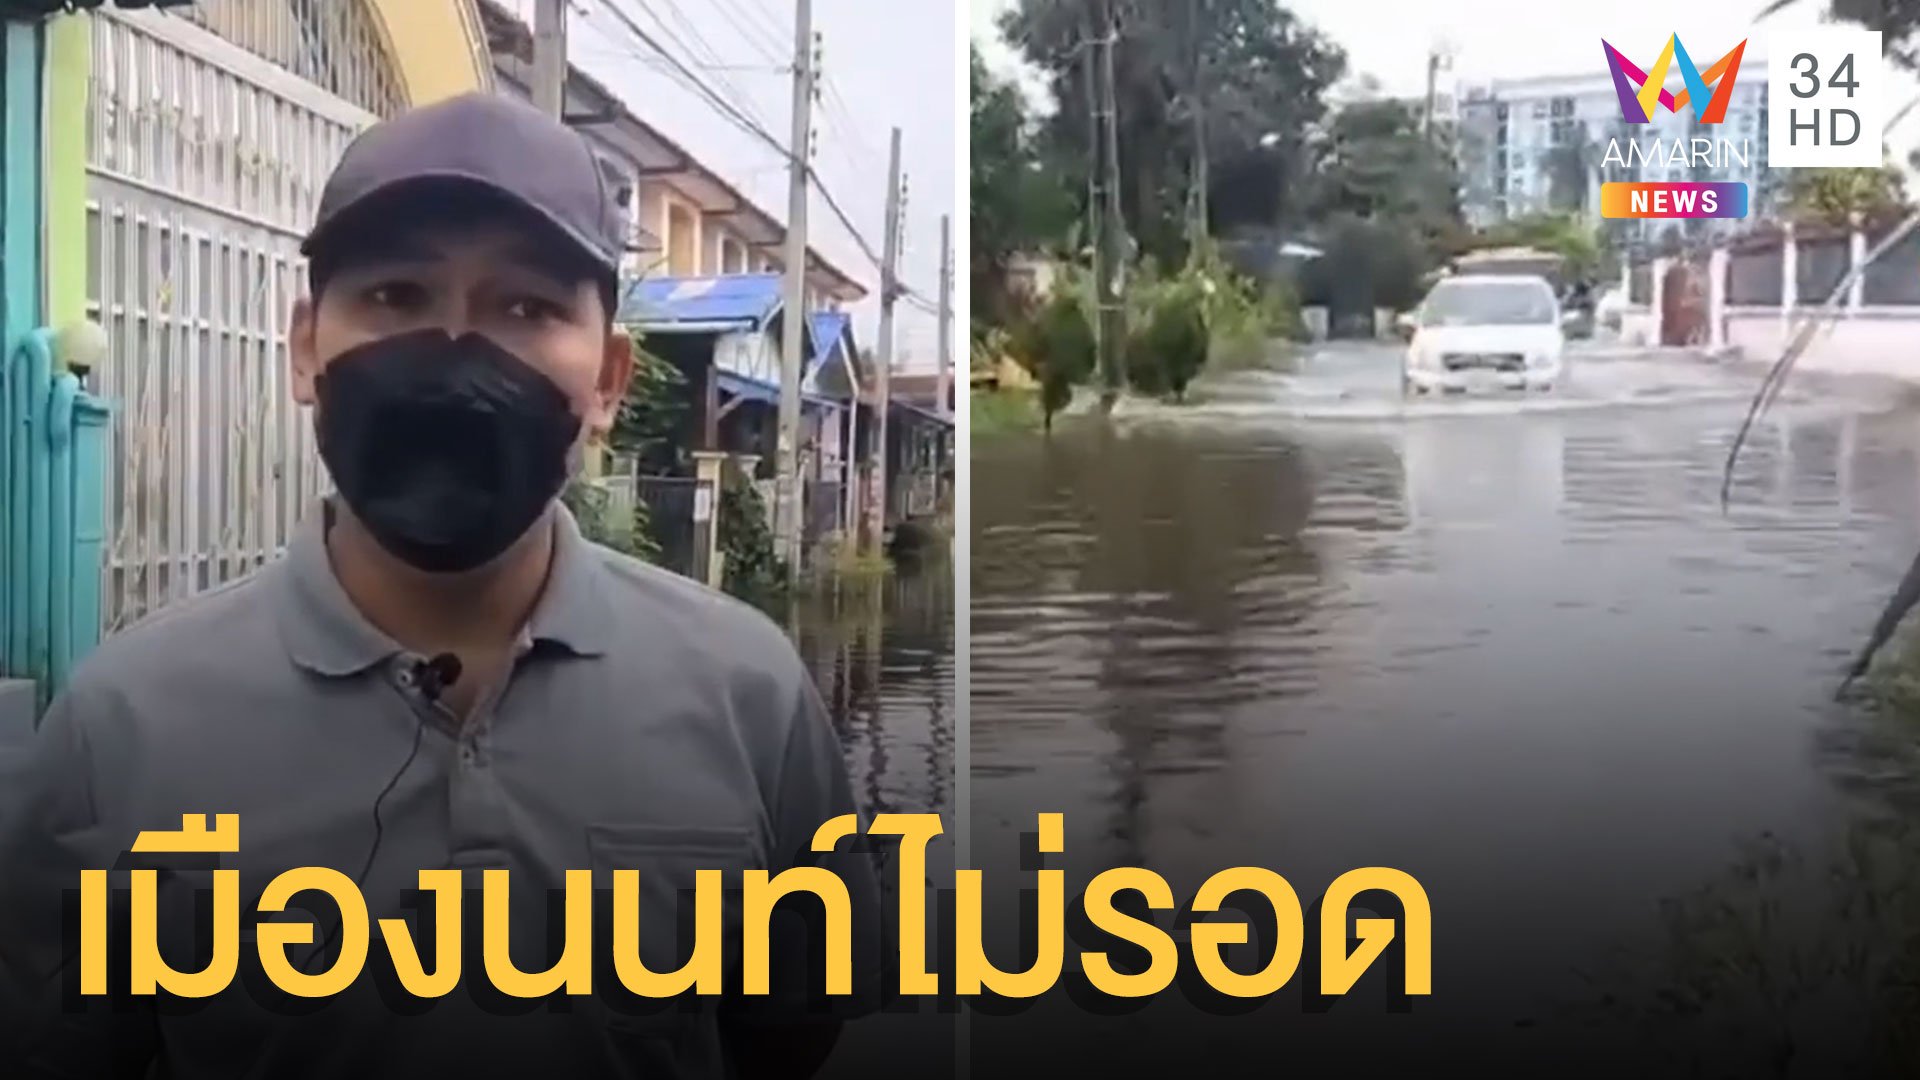 ฝนตกหนัก เมืองนนท์น้ำมากท่วมเข้าหมู่บ้าน | ข่าวอรุณอมรินทร์ | 18 ต.ค. 64 | AMARIN TVHD34